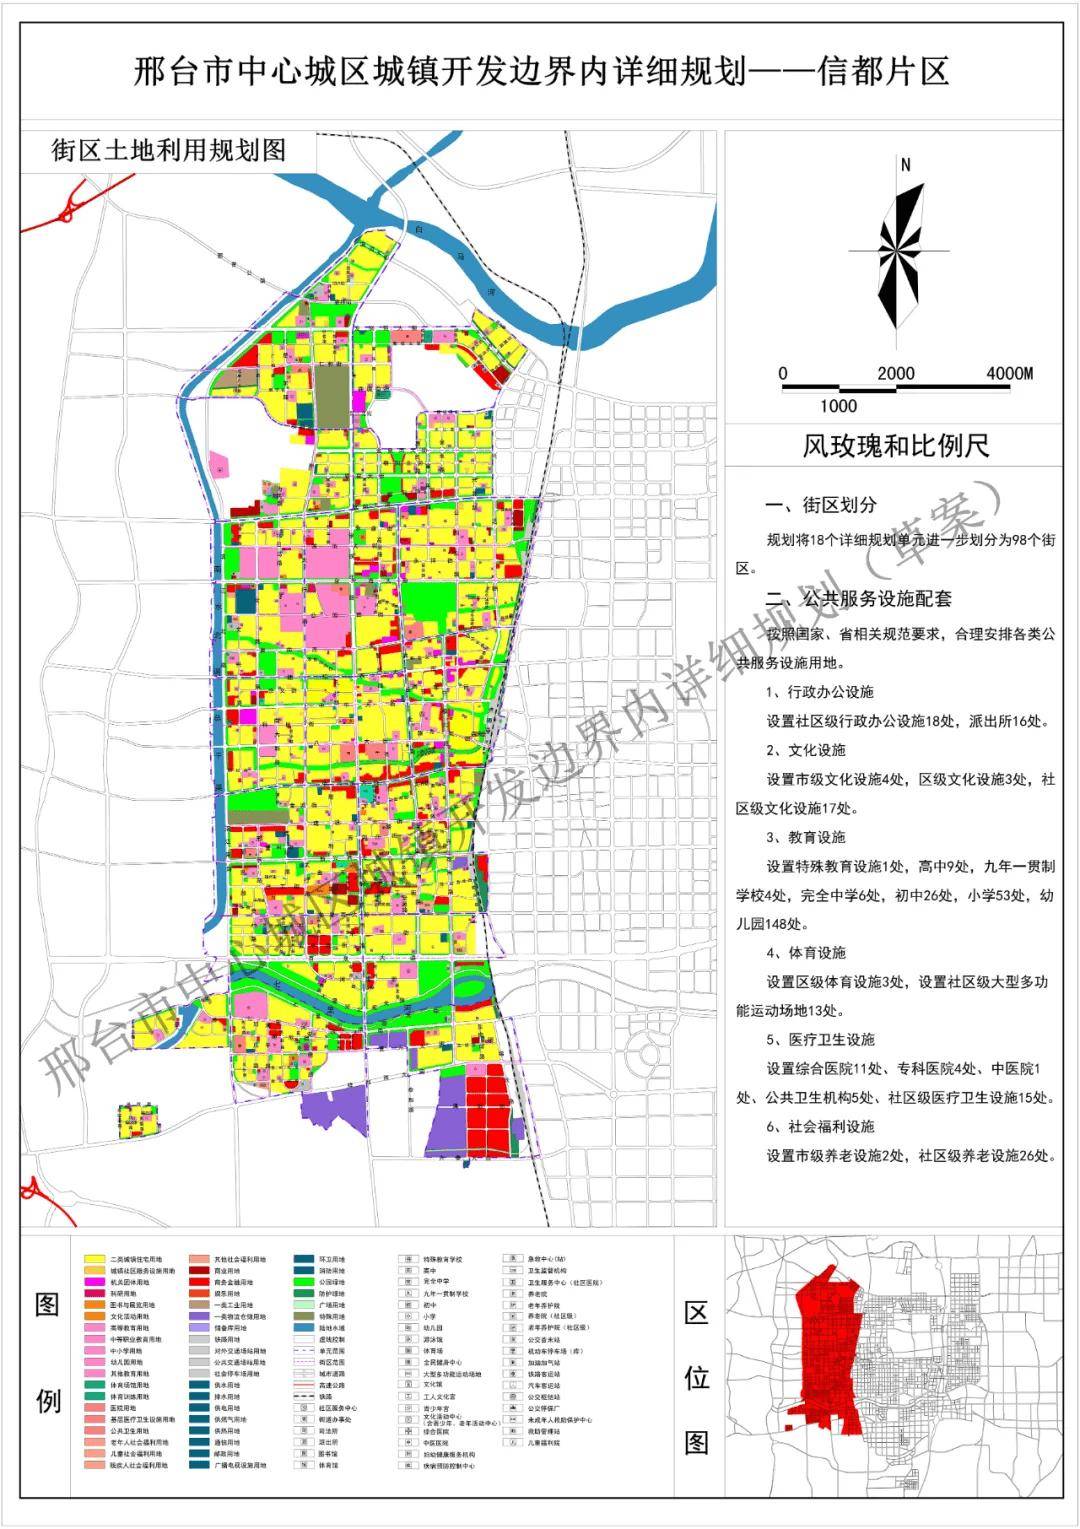 此外,为落实《邢台市国土空间总体规划(2021—2035年)》确定的城市